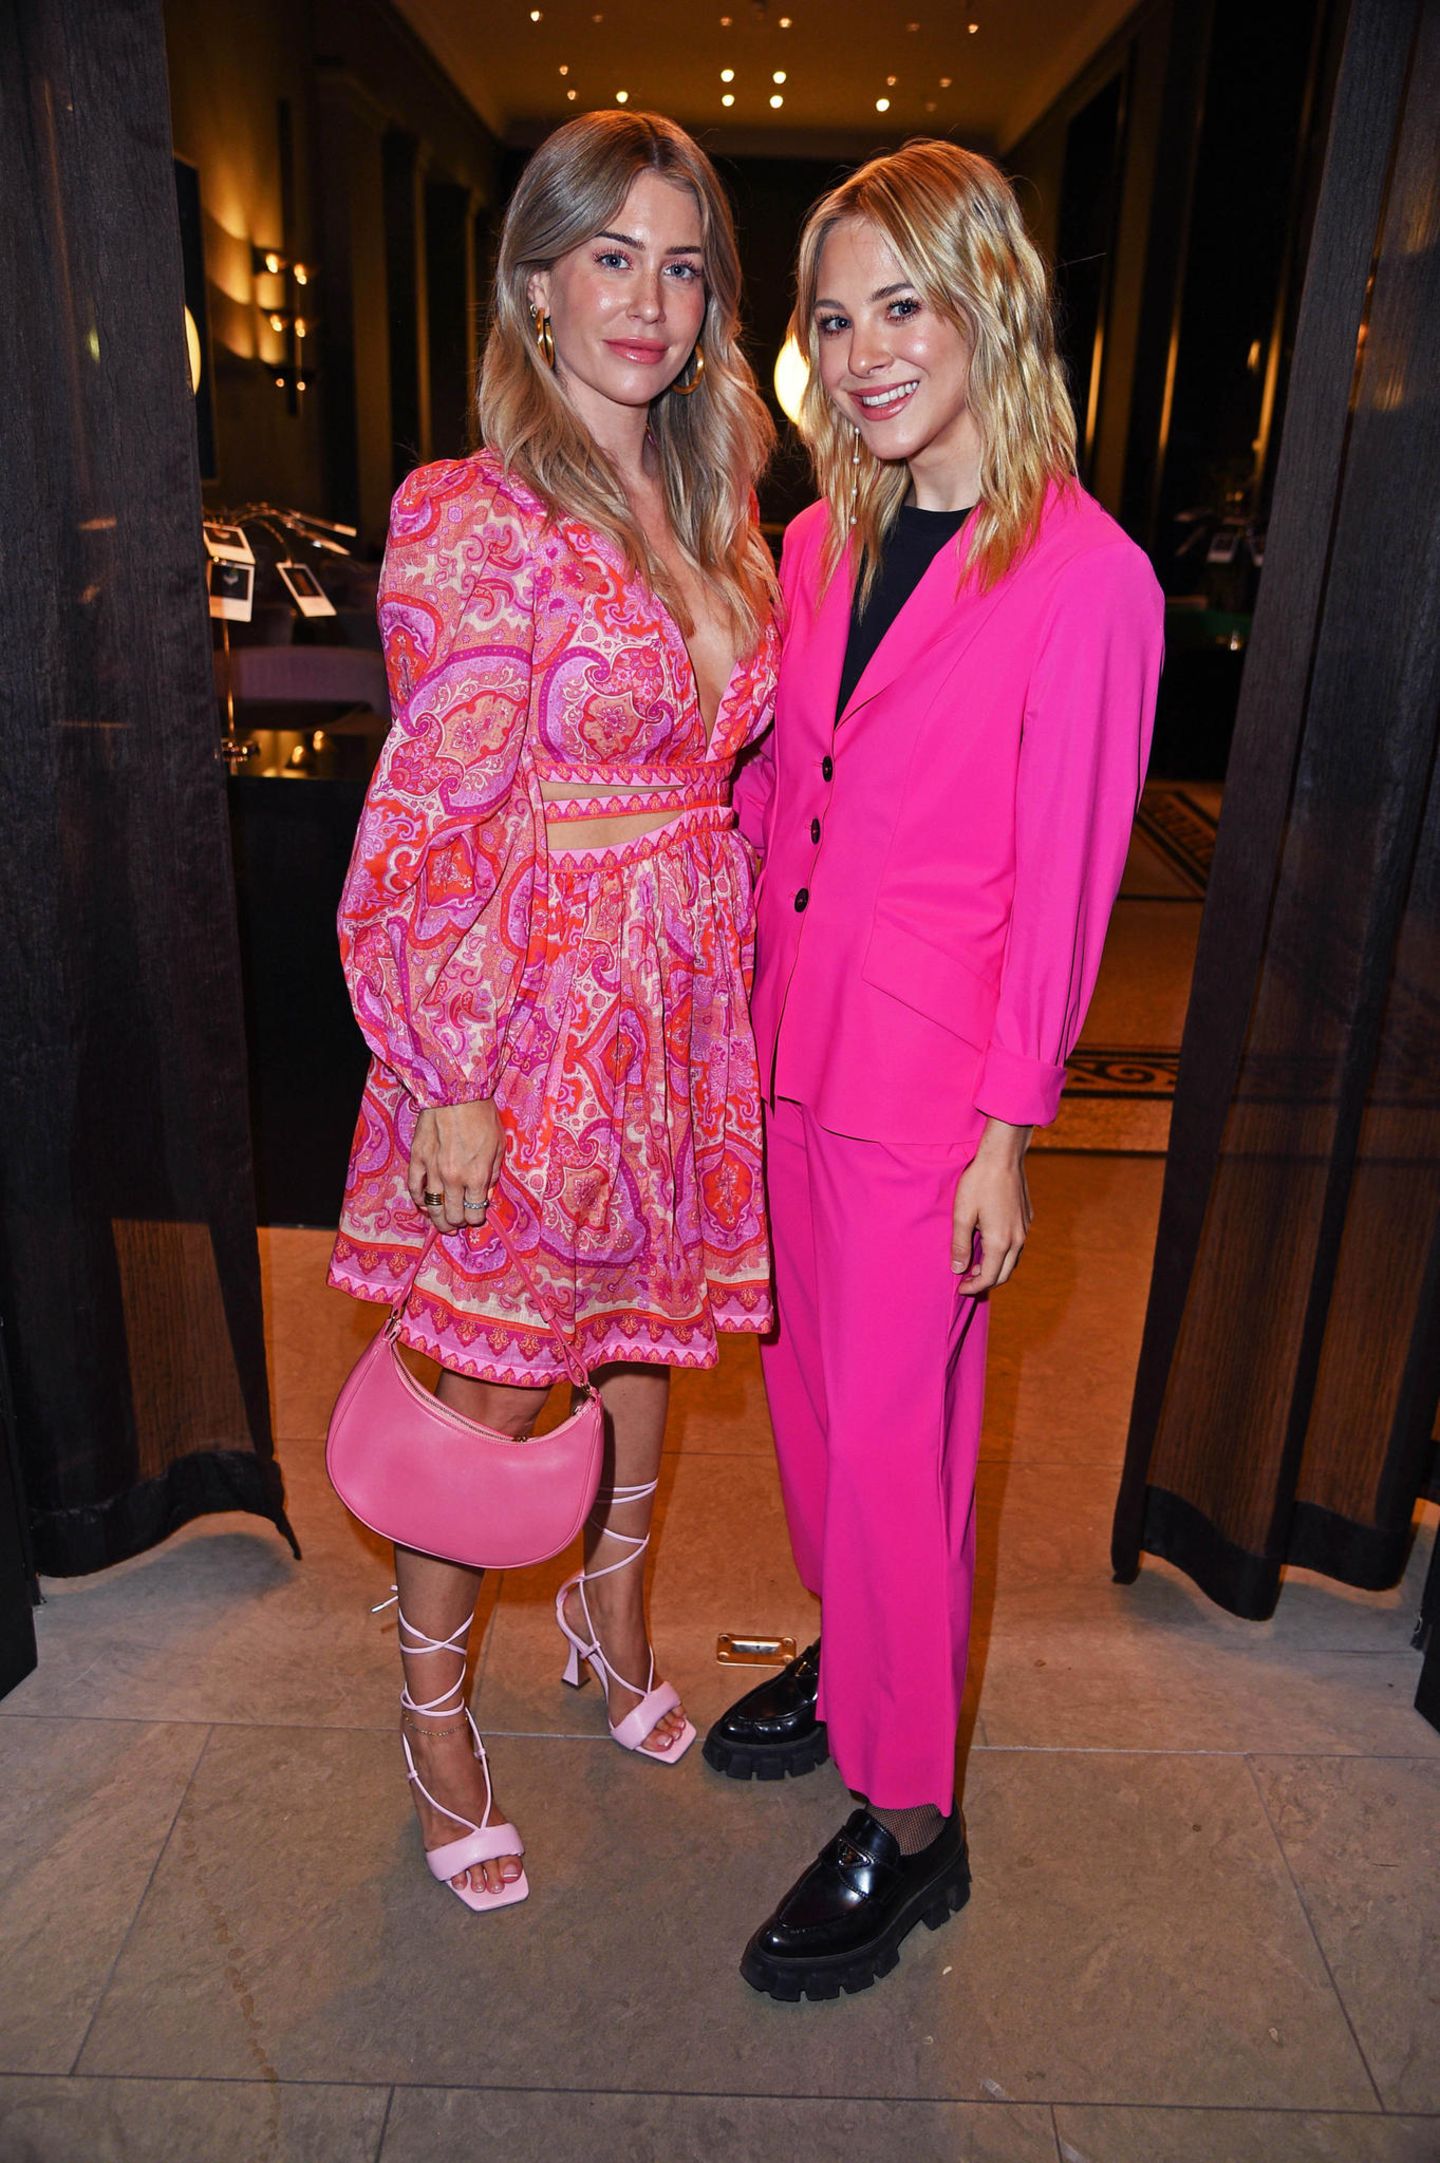 Influencerinnen-Doppel in Pink: Mrs. Bella und Diana zur Löwen liegen mit ihren pinkfarbenen Party-Looks, einmal romantisch, einmal lässig-seriös, voll im Barbiecore-Trend.